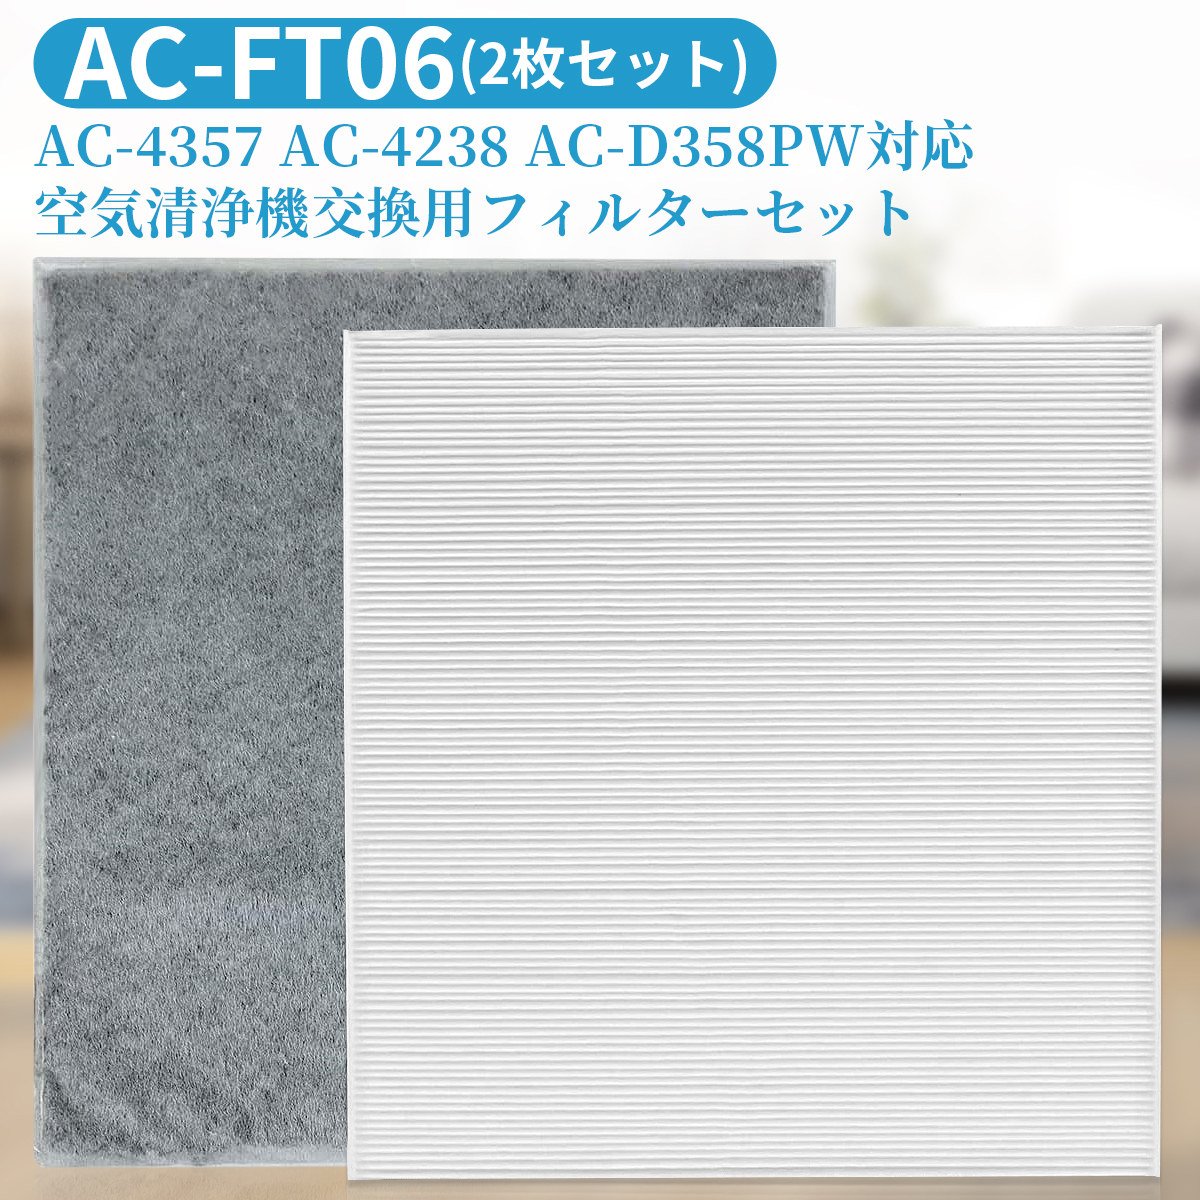 ツインバード ac-ft06 交換用フィルターセット AC-FT06 空気清浄機 フィルター AC-4357 AC-4238 AC-D358PW対応 HEPA集塵フィルター 脱臭フィルター (互換品 2枚セット)